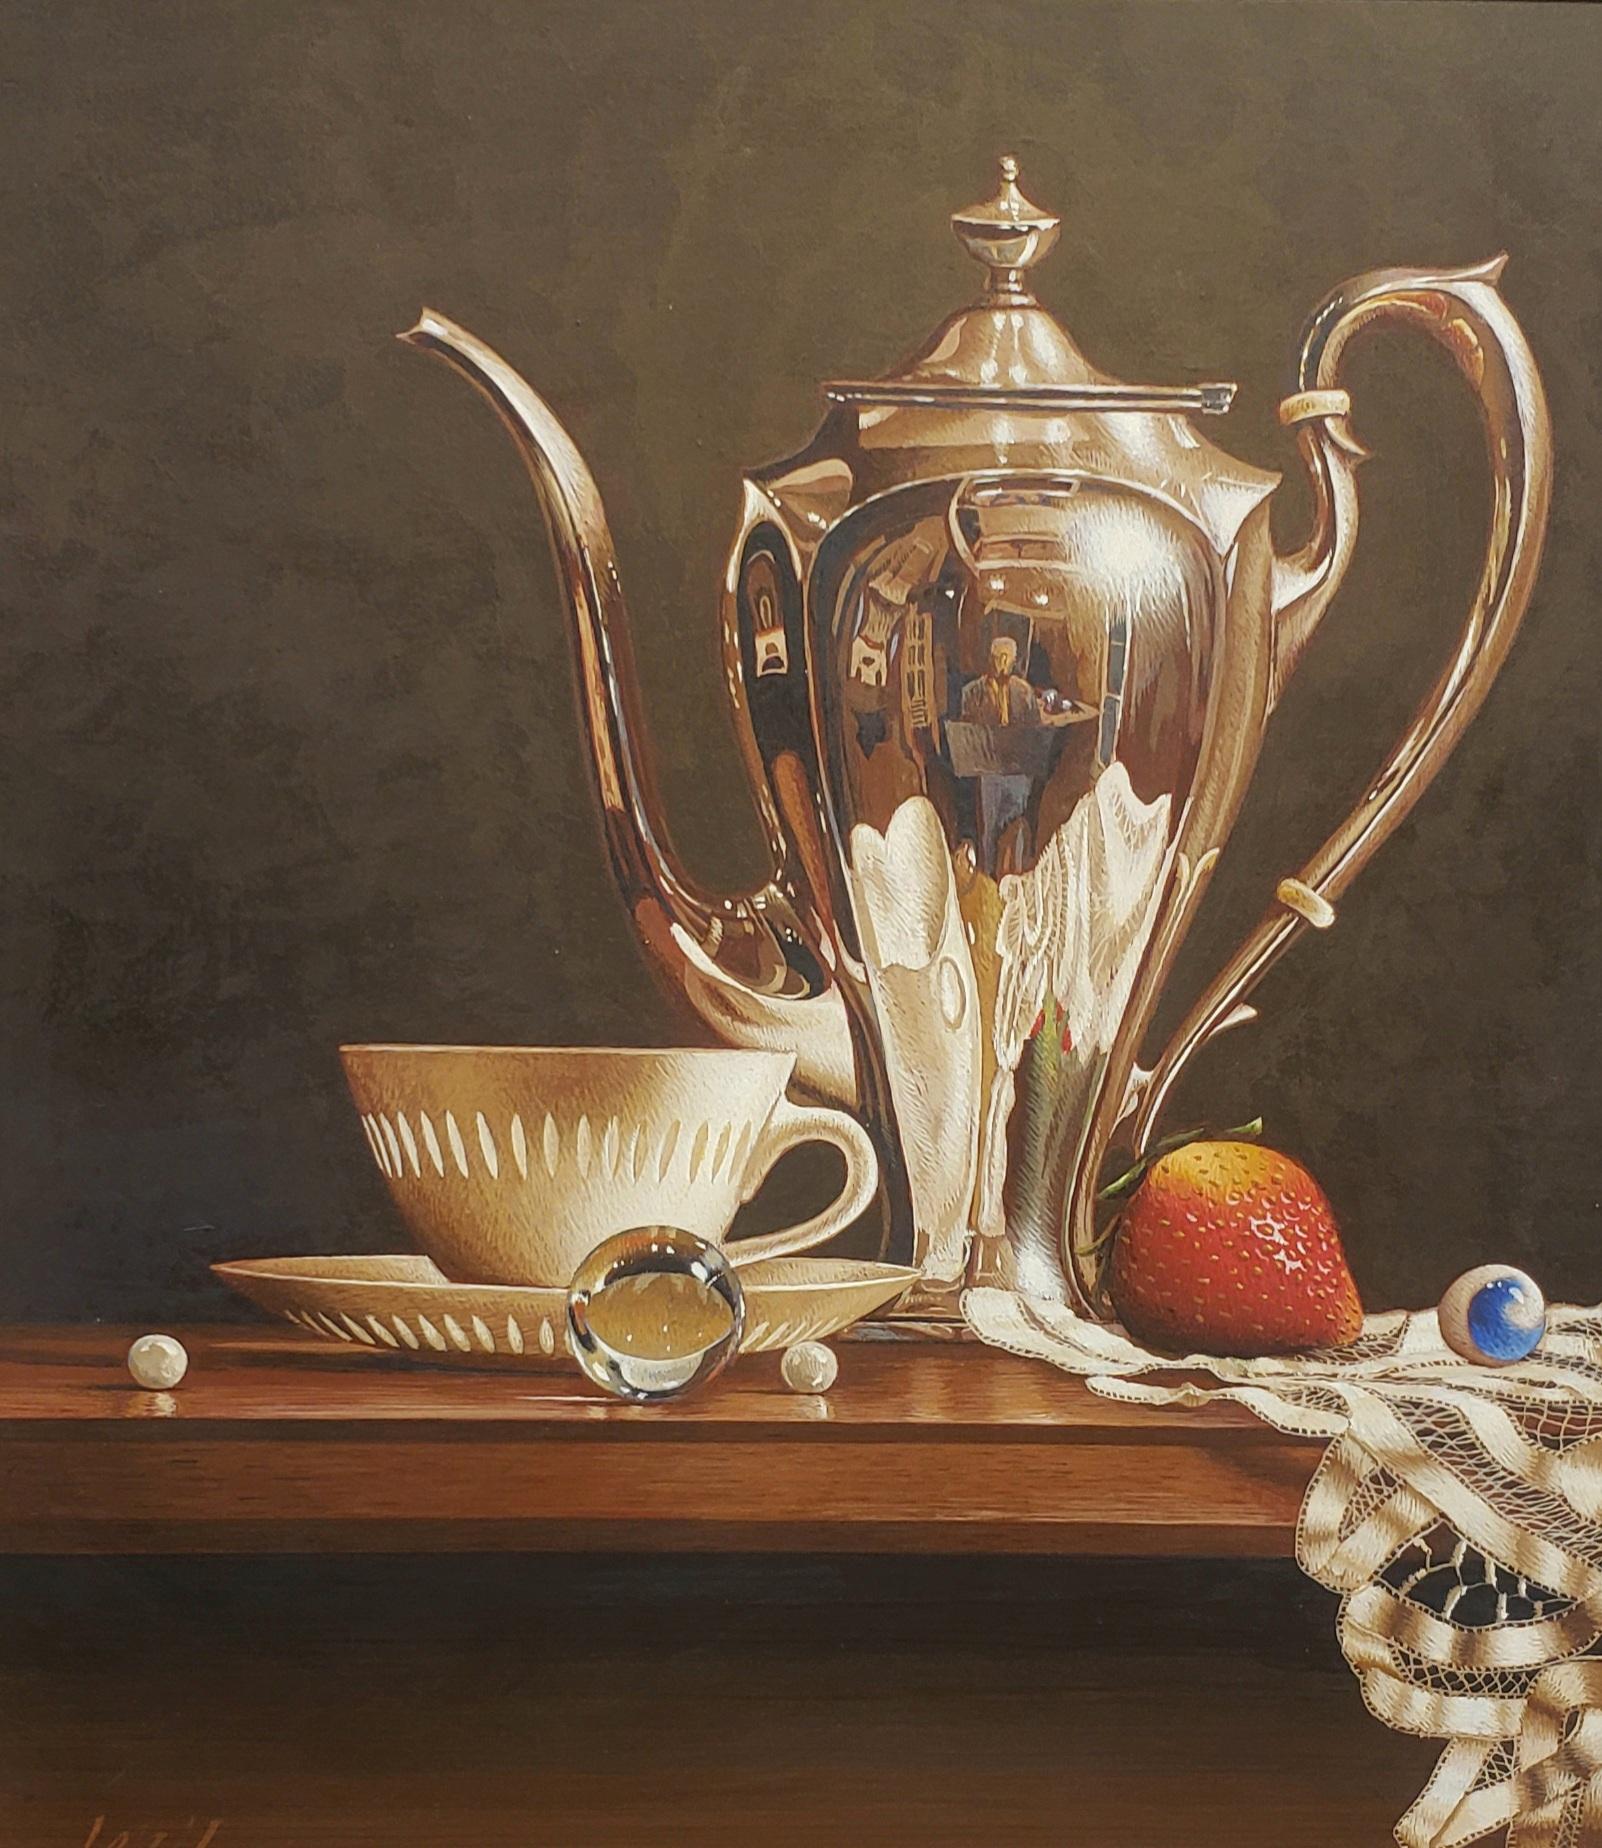   Kaffeetasse mit Perle, Ei-Tempera,  Realismus,  3D-Applikation, amerikanische Künstlerin